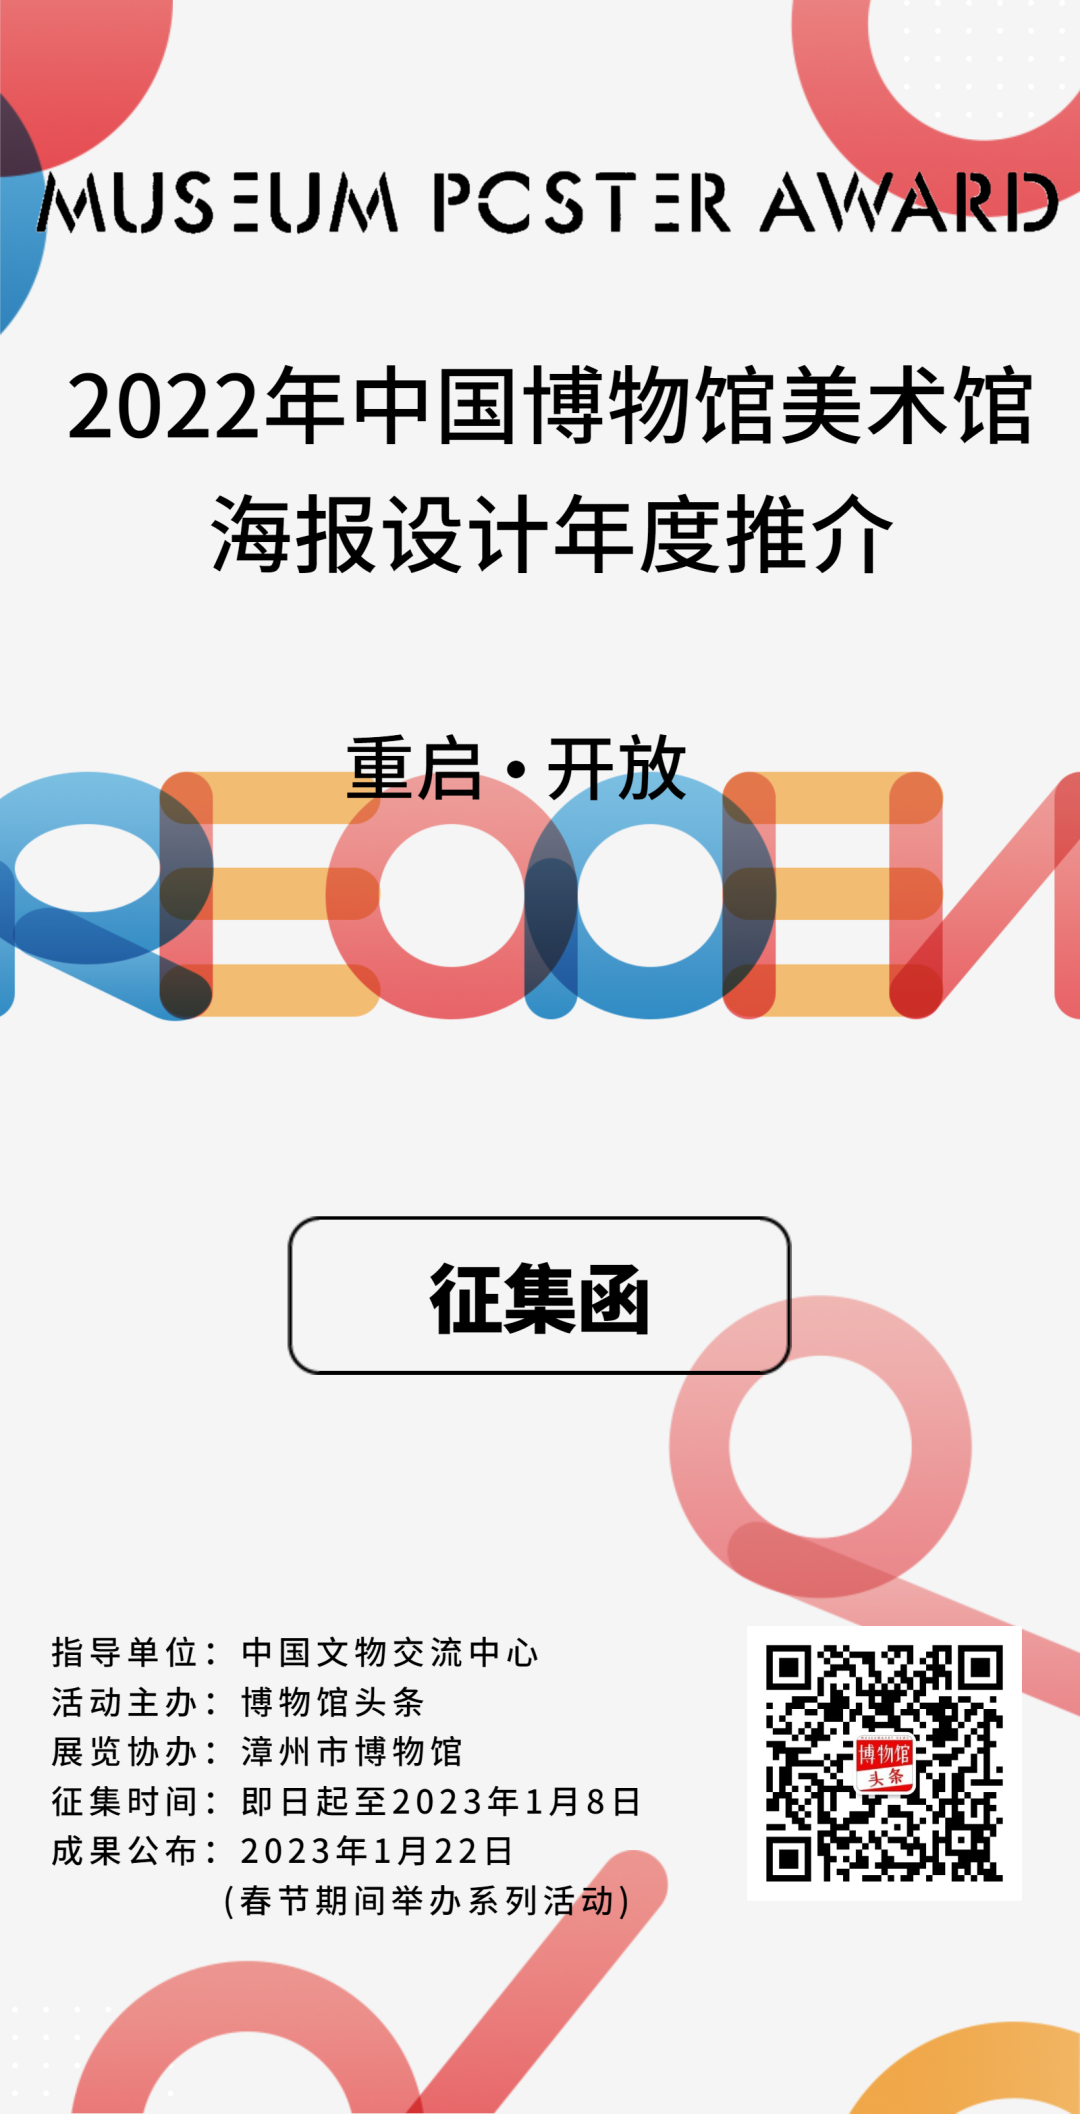 2022中国博物馆美术馆海报设计年度推介活动海报征集(图1)